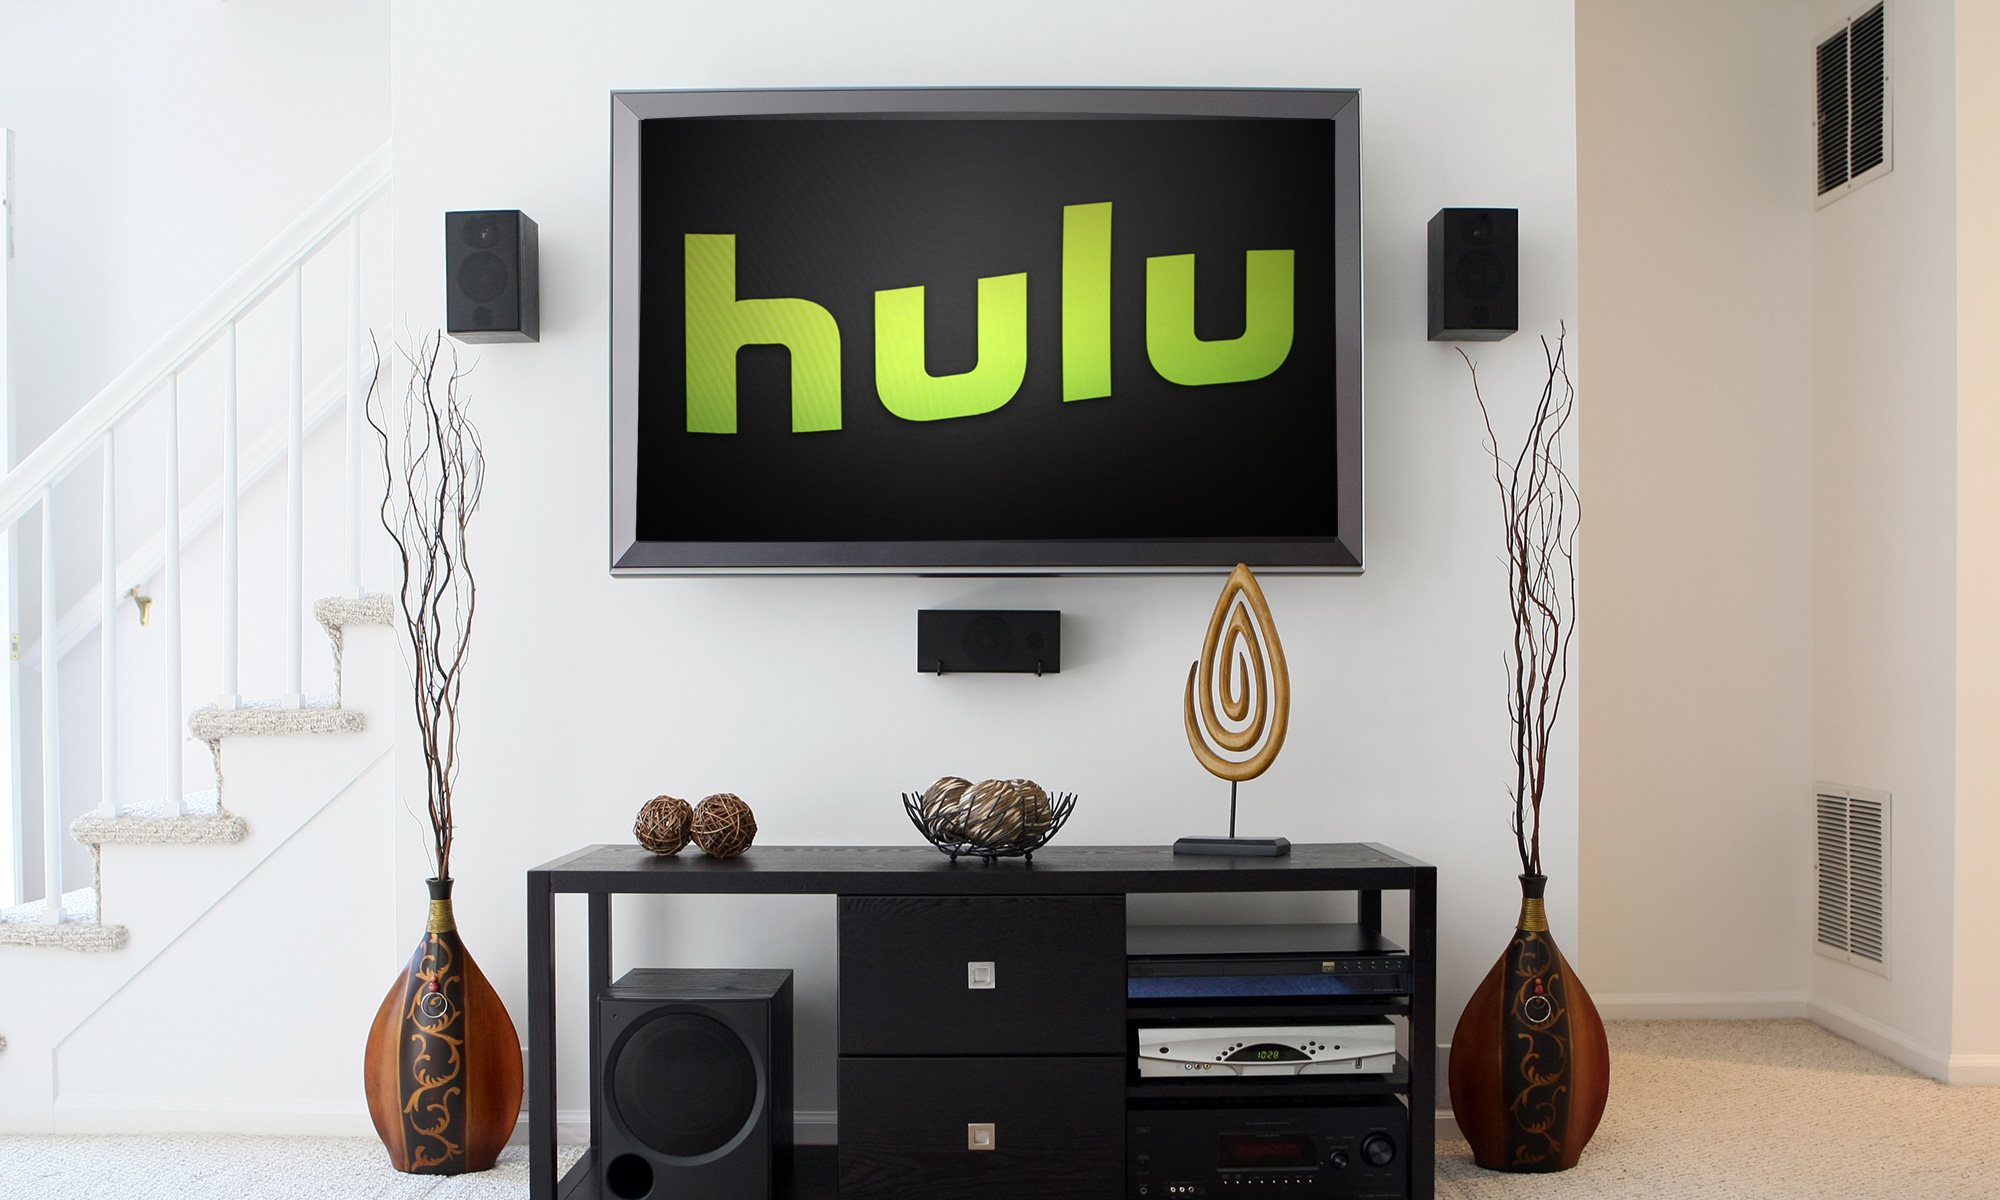 Гостиная, на стене висит телевизор, на котором зелеными буквами написано «Hulu».  Под телевизором стоит тумба с украшениями.